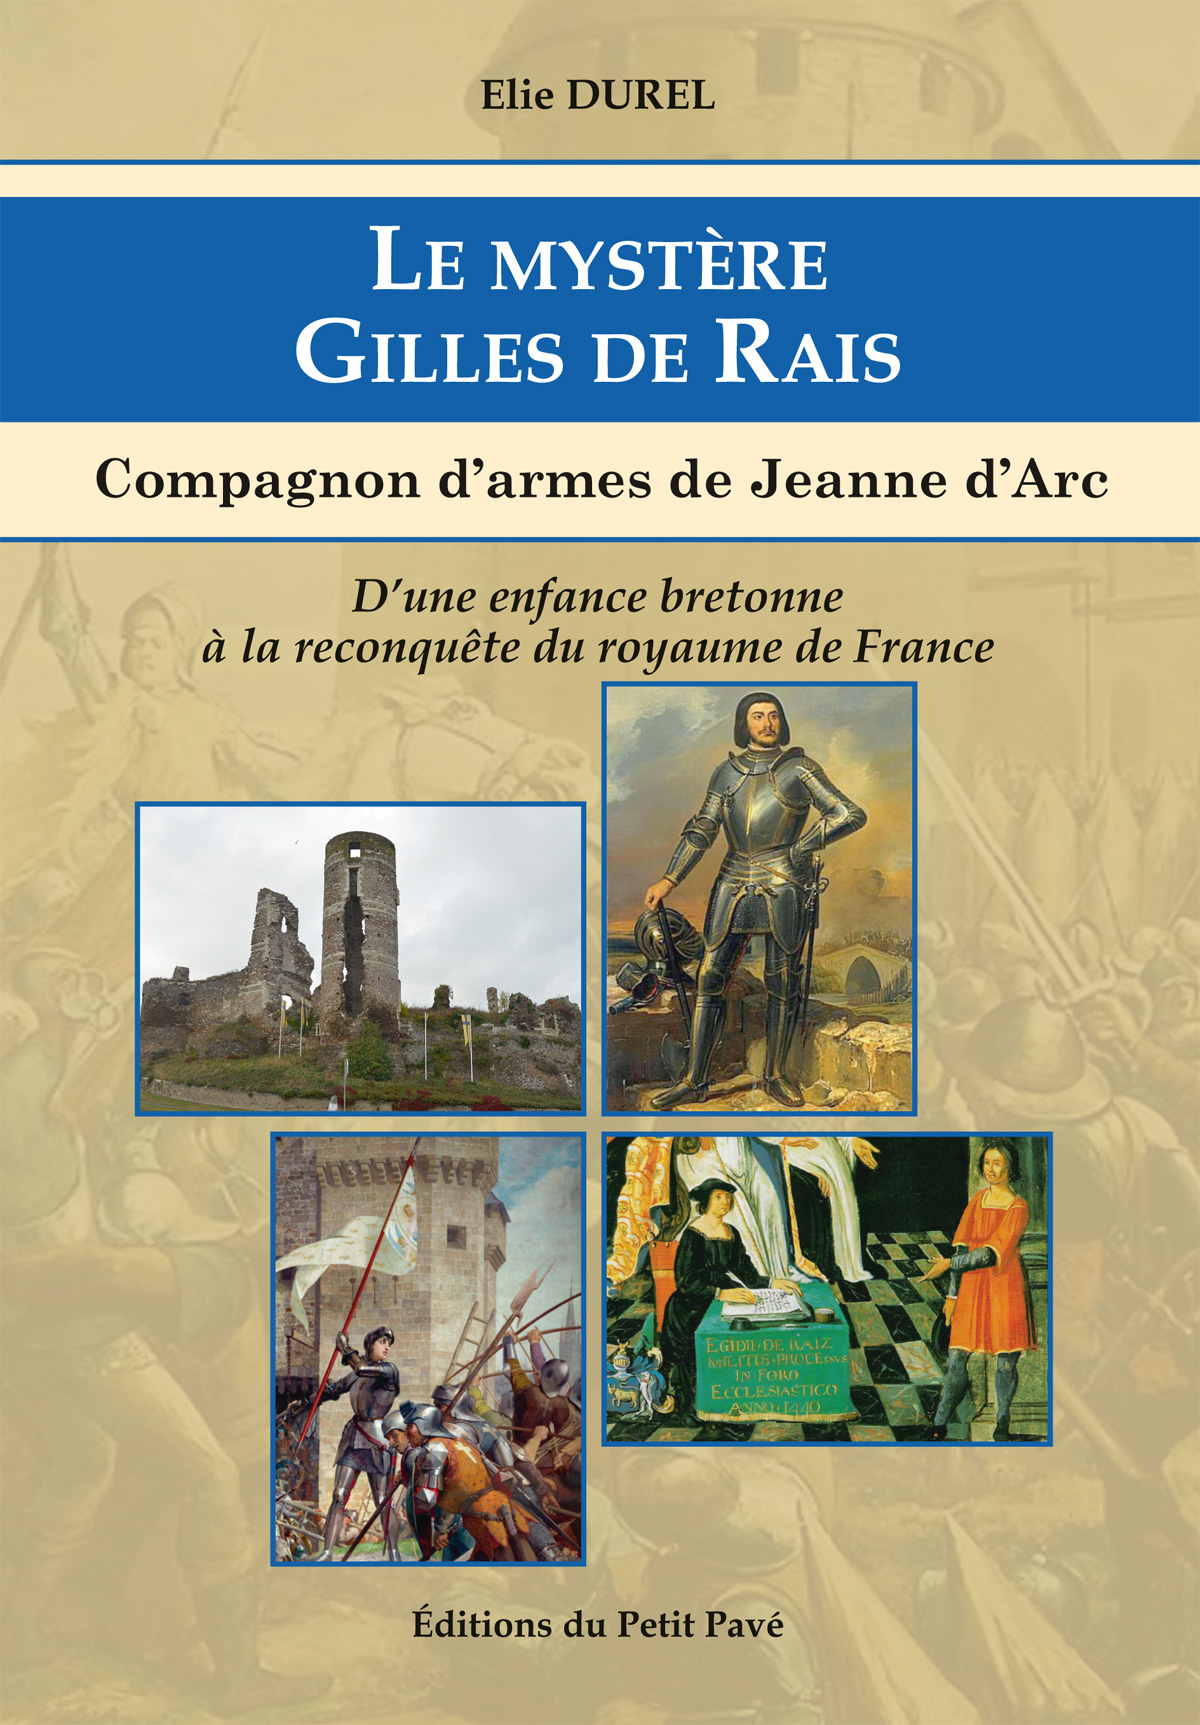 Le mystère Gilles de Rais - Photo le_mystere_gilles_de_rais_par_elie_durel_aux_editions_du_petit_pave.jpg